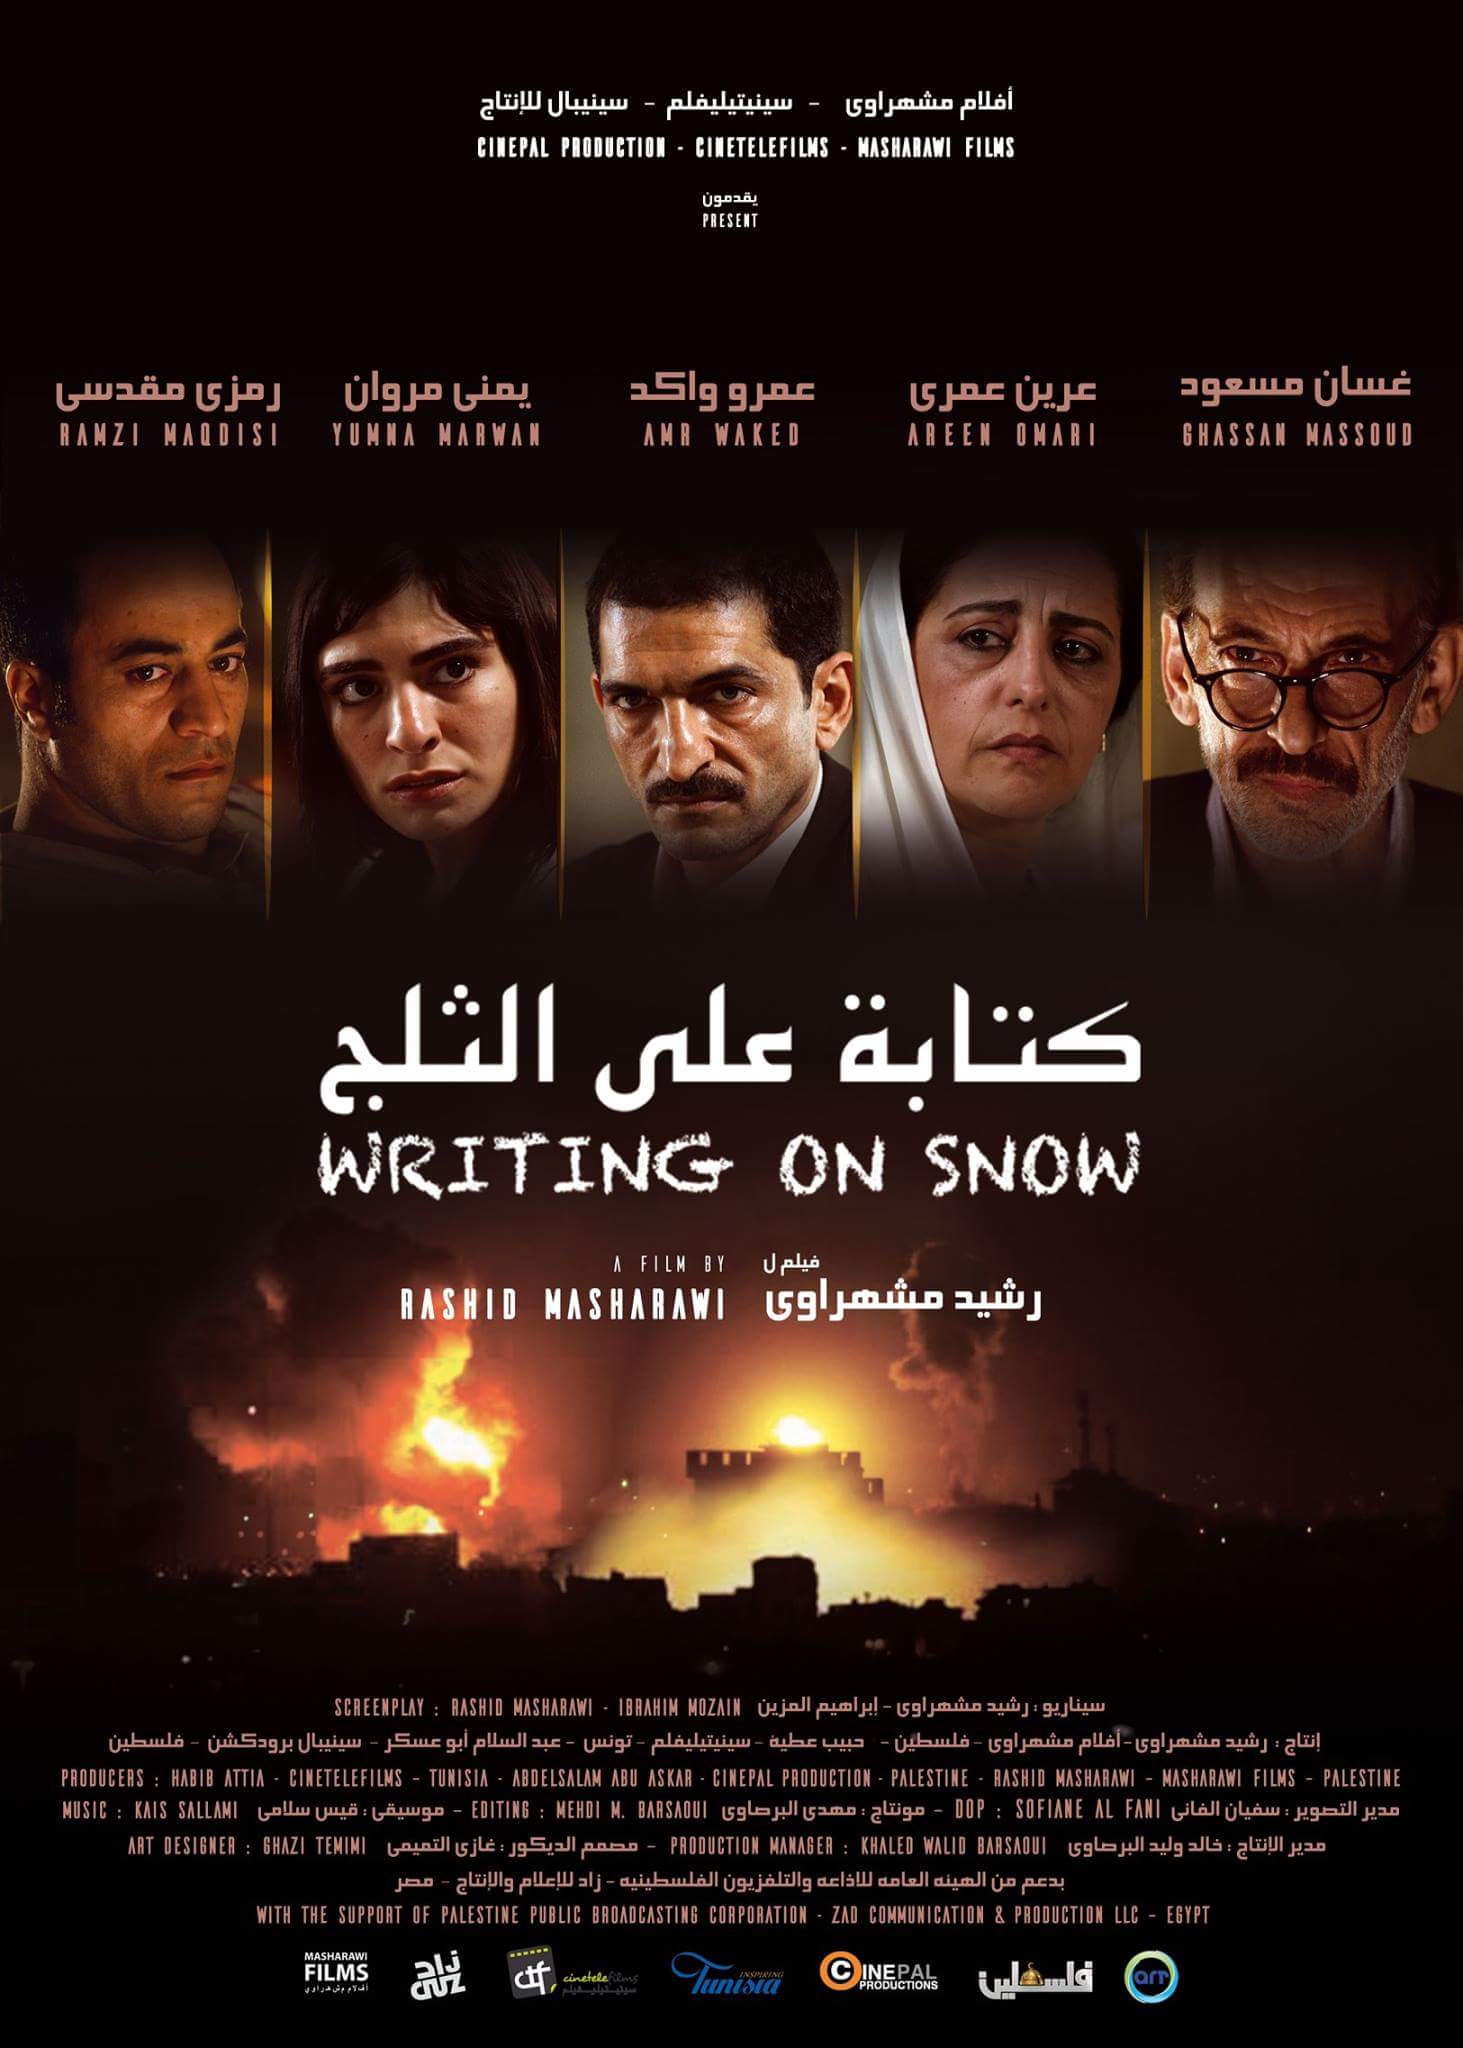 بوستر فيلم كتابة على الثلج من بطولة عمرو واكد